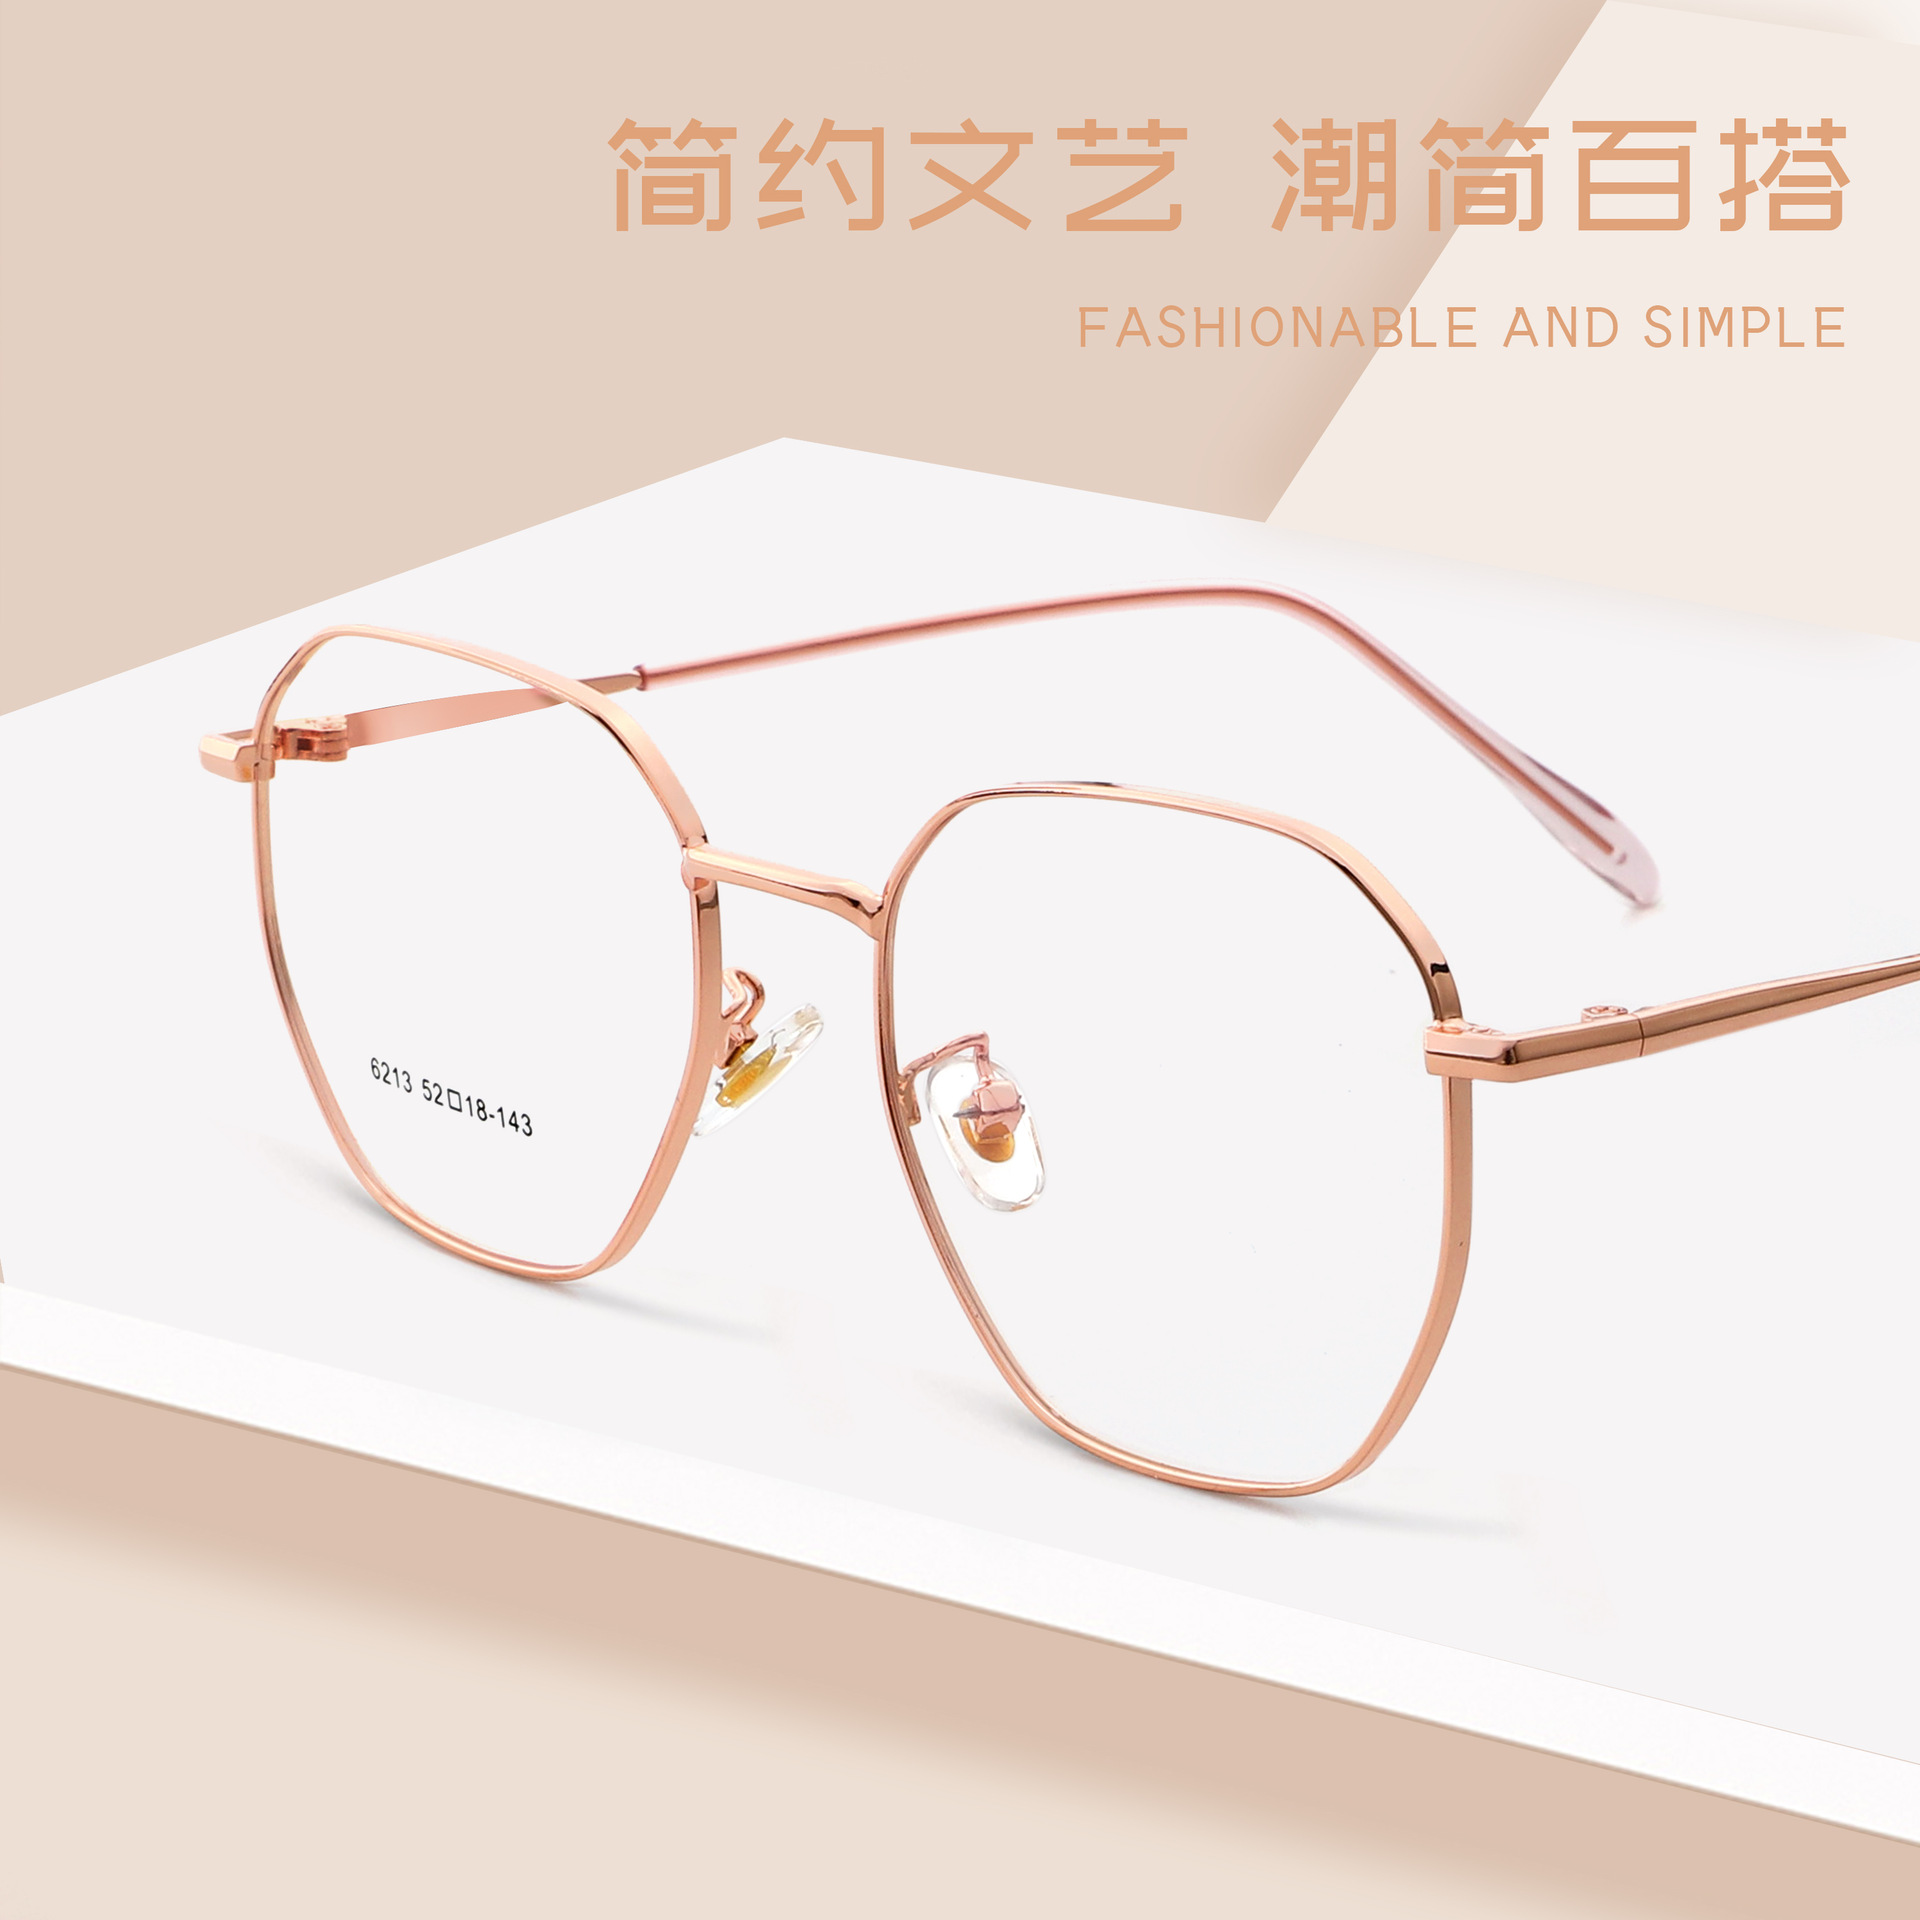 2021新款时尚金属框架眼镜女款网红眼镜架圆框全框平光镜6213